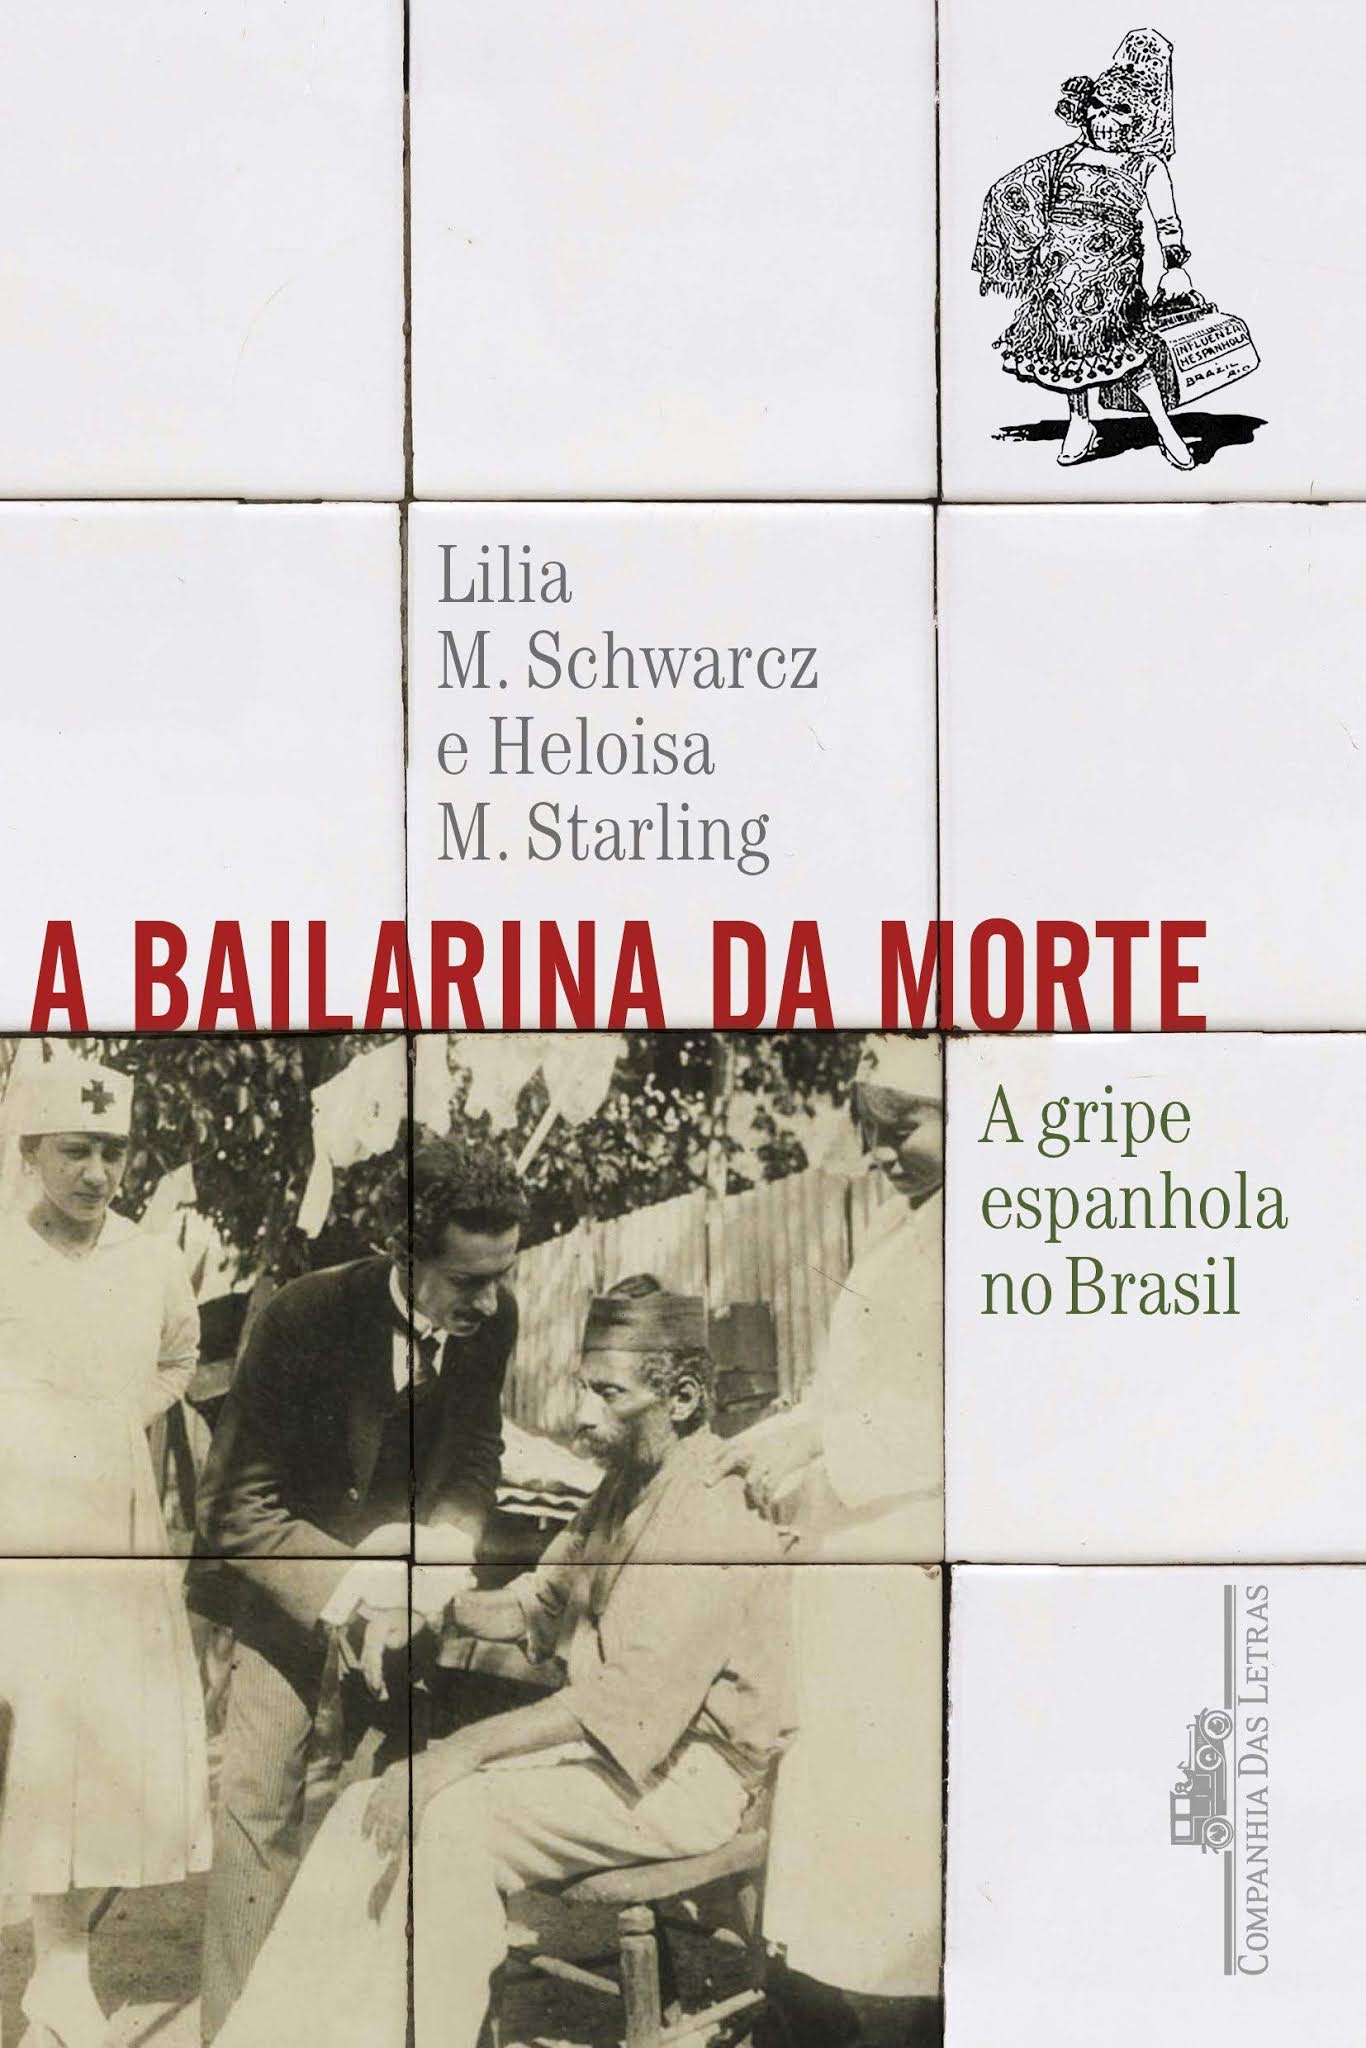 Histórias da Preta (Nova edição) - Heloisa Pires Lima - Grupo Companhia das  Letras